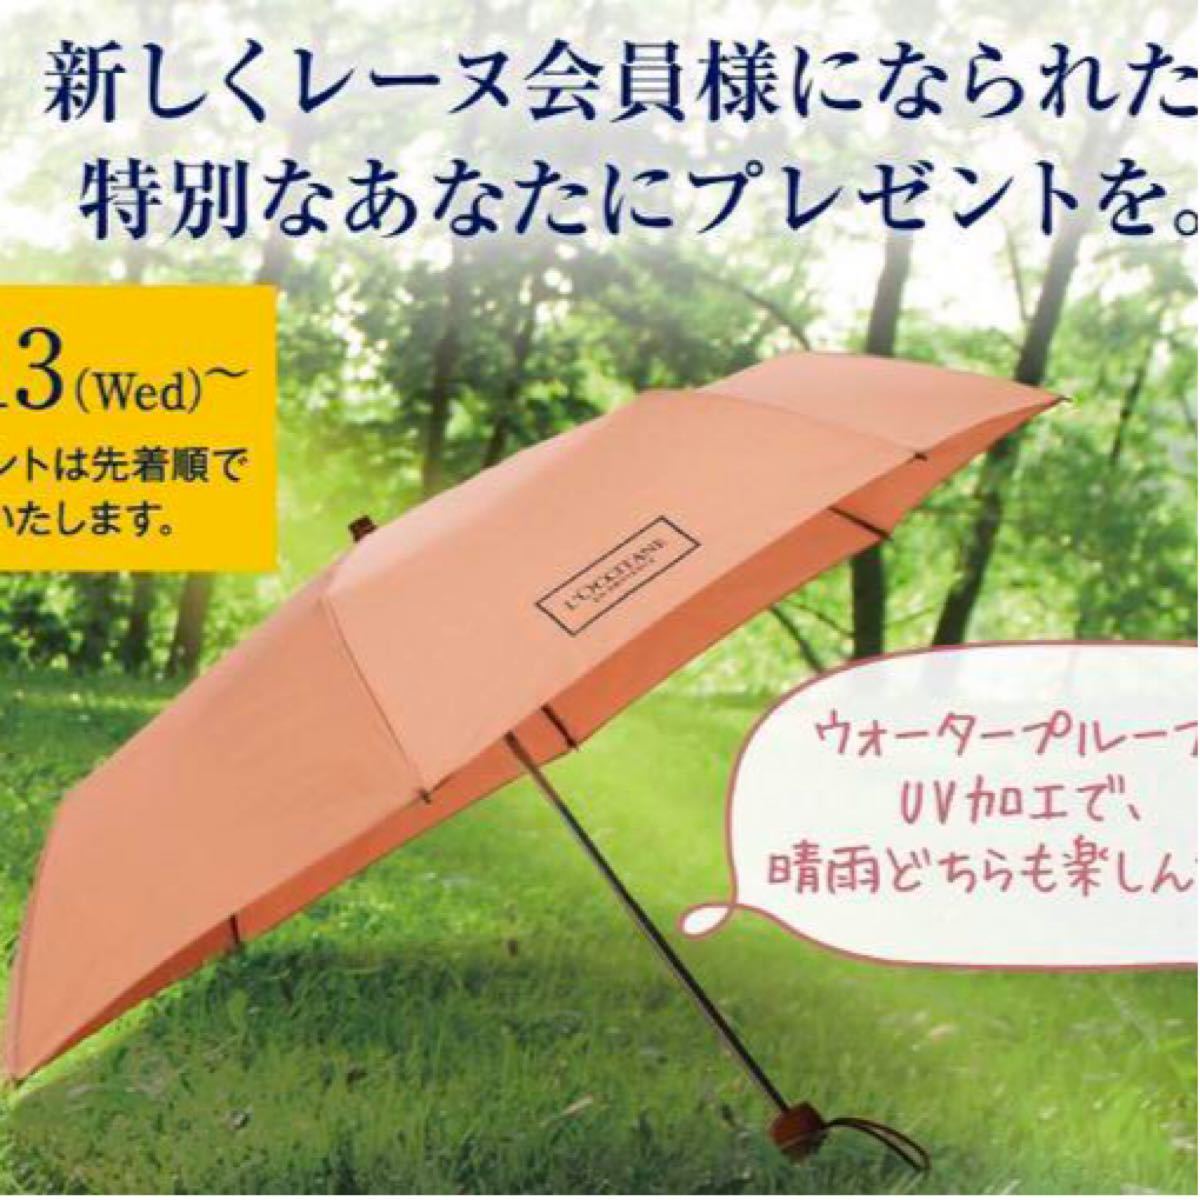 ロクシタン UV加工&ウォータープルーフ 晴雨兼用 折り畳み傘 限定 ノベルティ